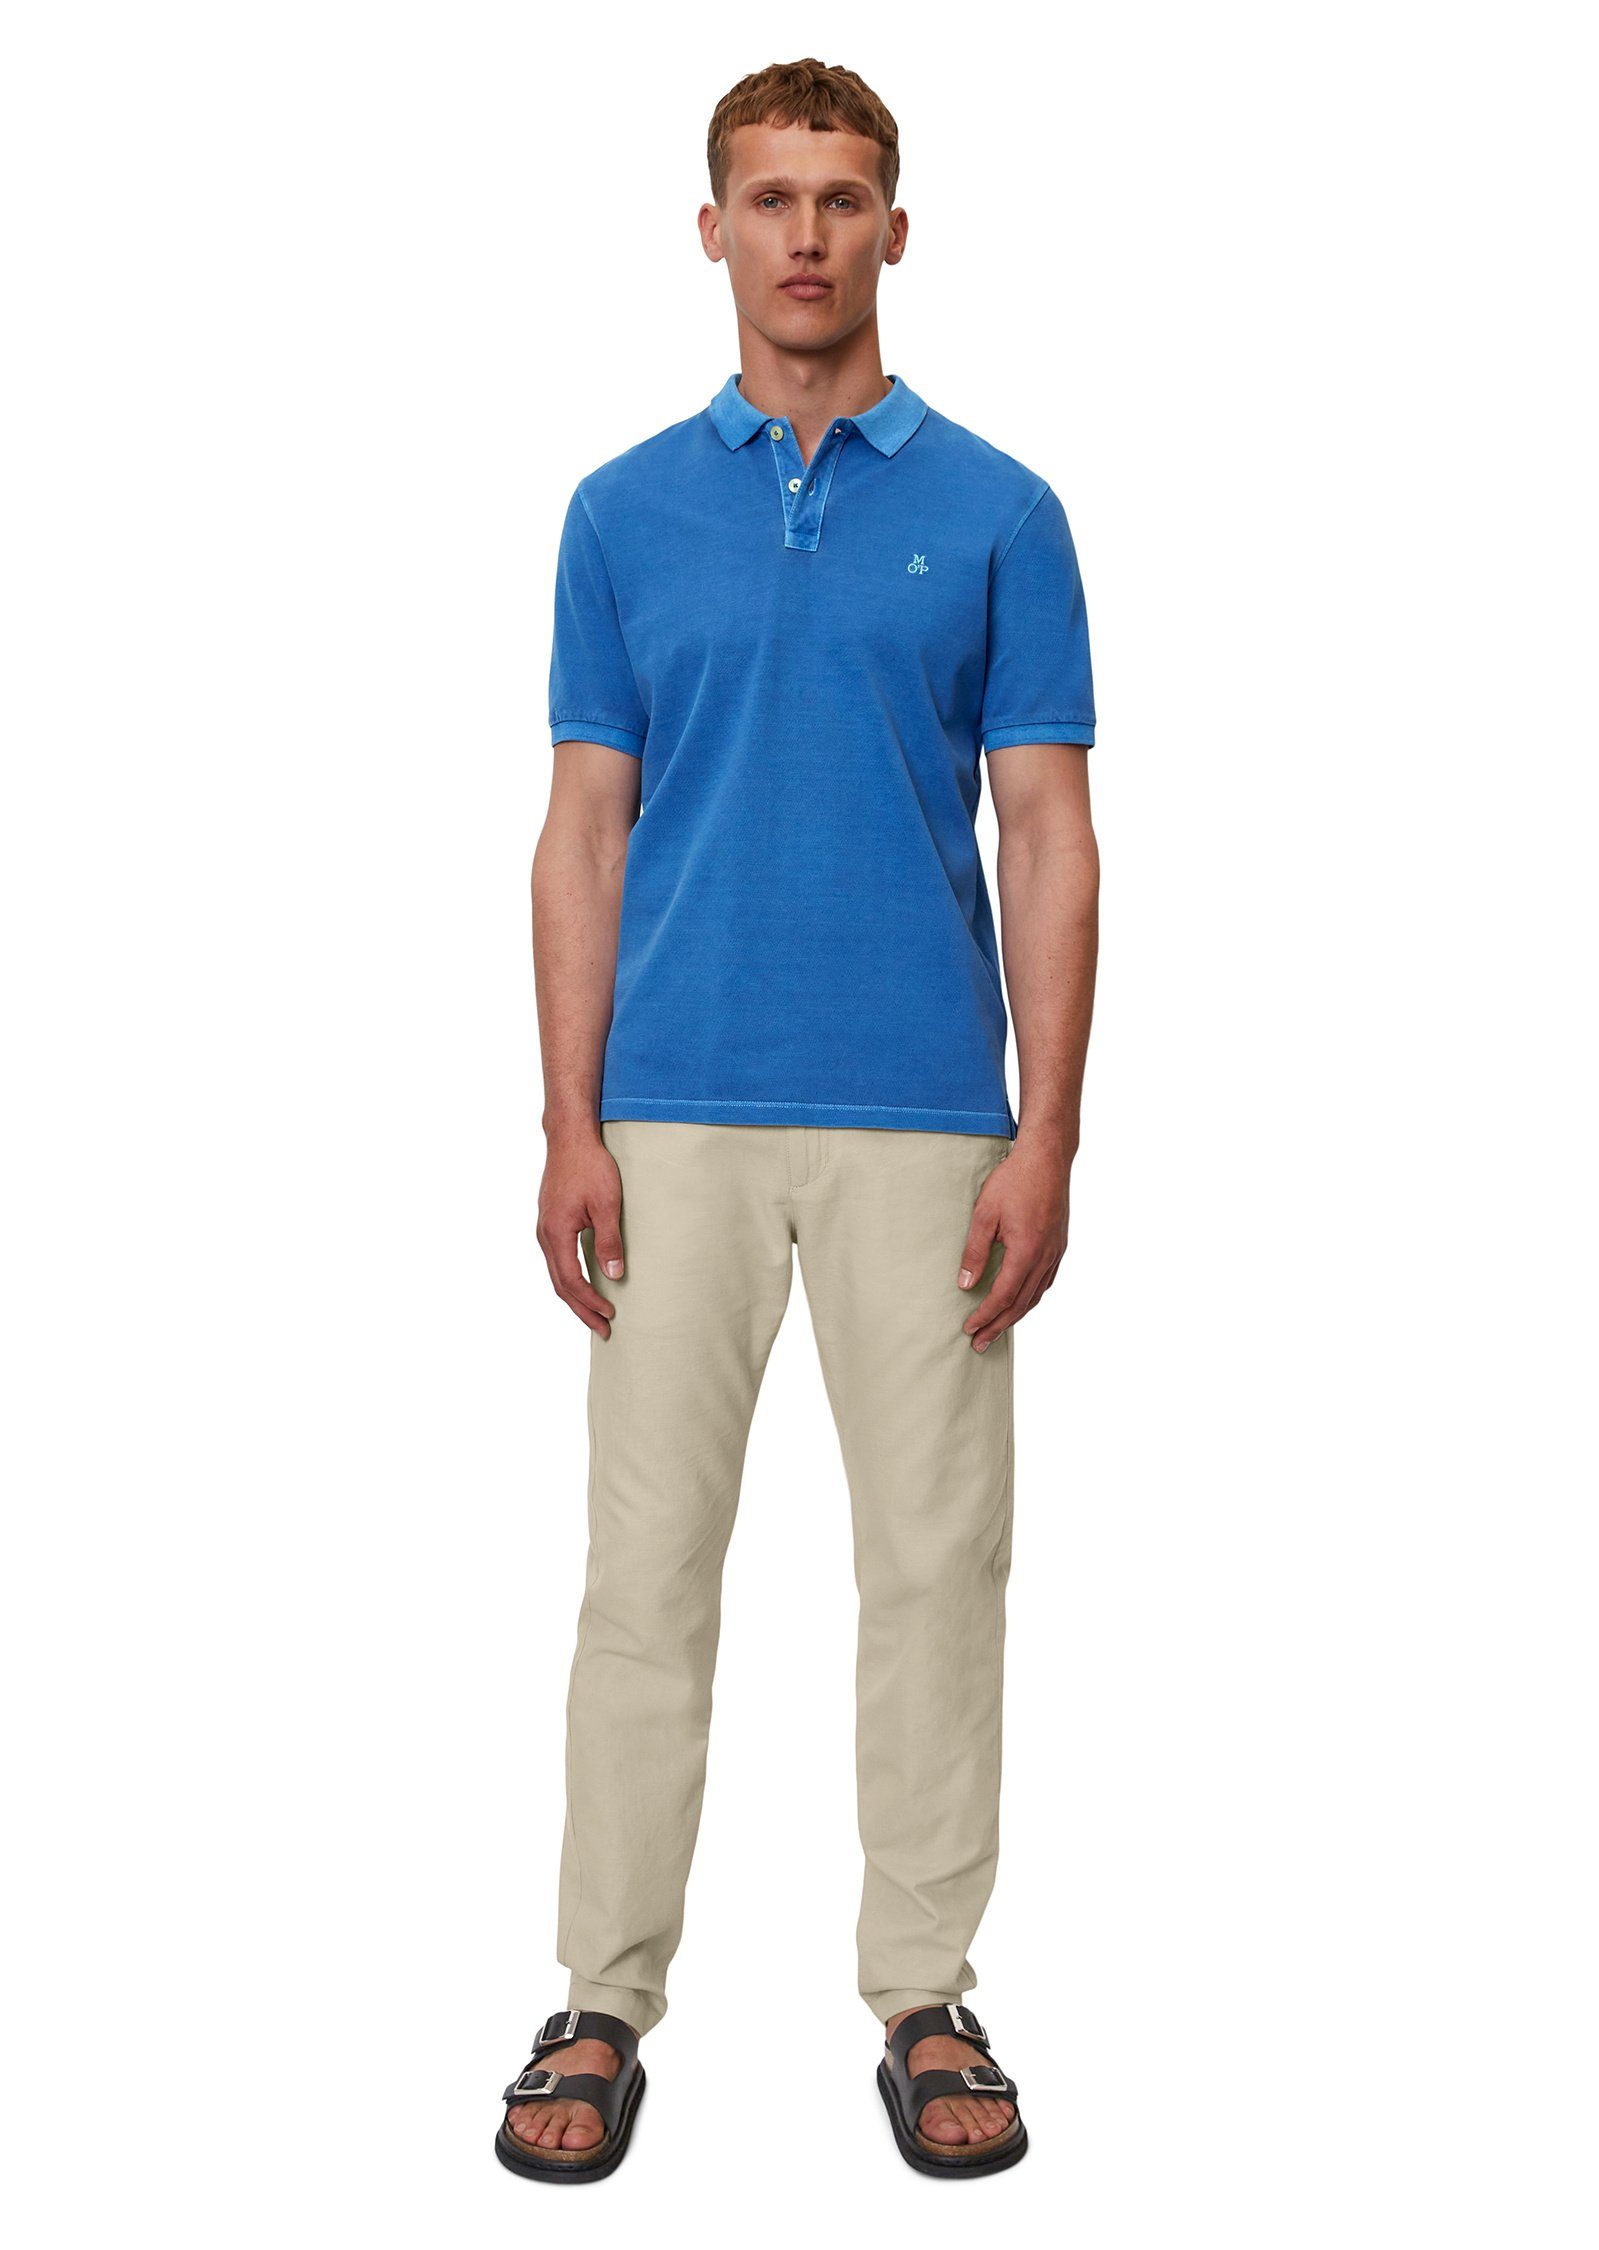 Marc O'Polo Bio-Baumwolle Poloshirt aus blau